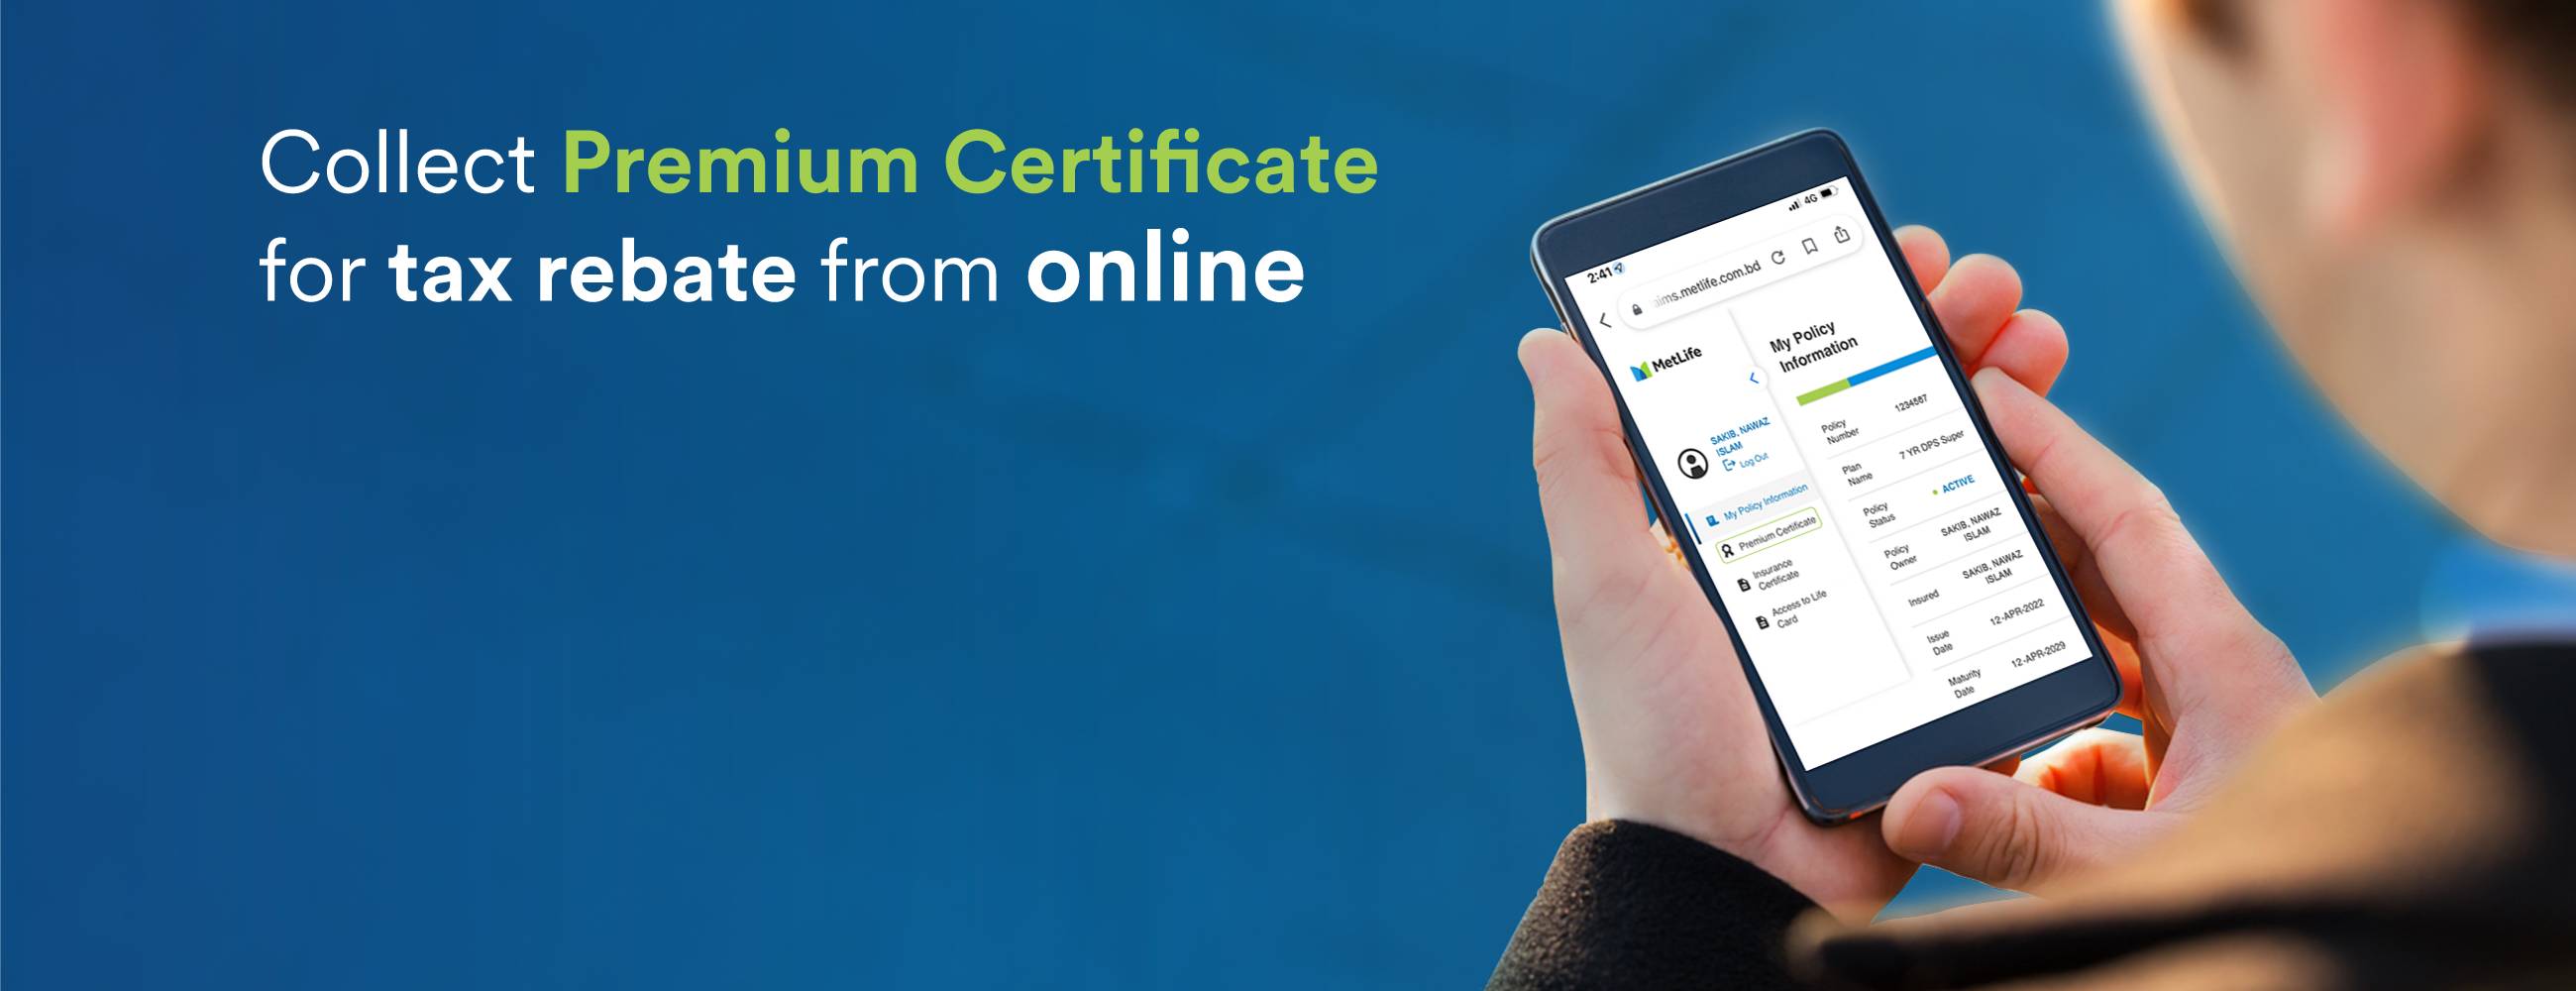 Premium Certificate